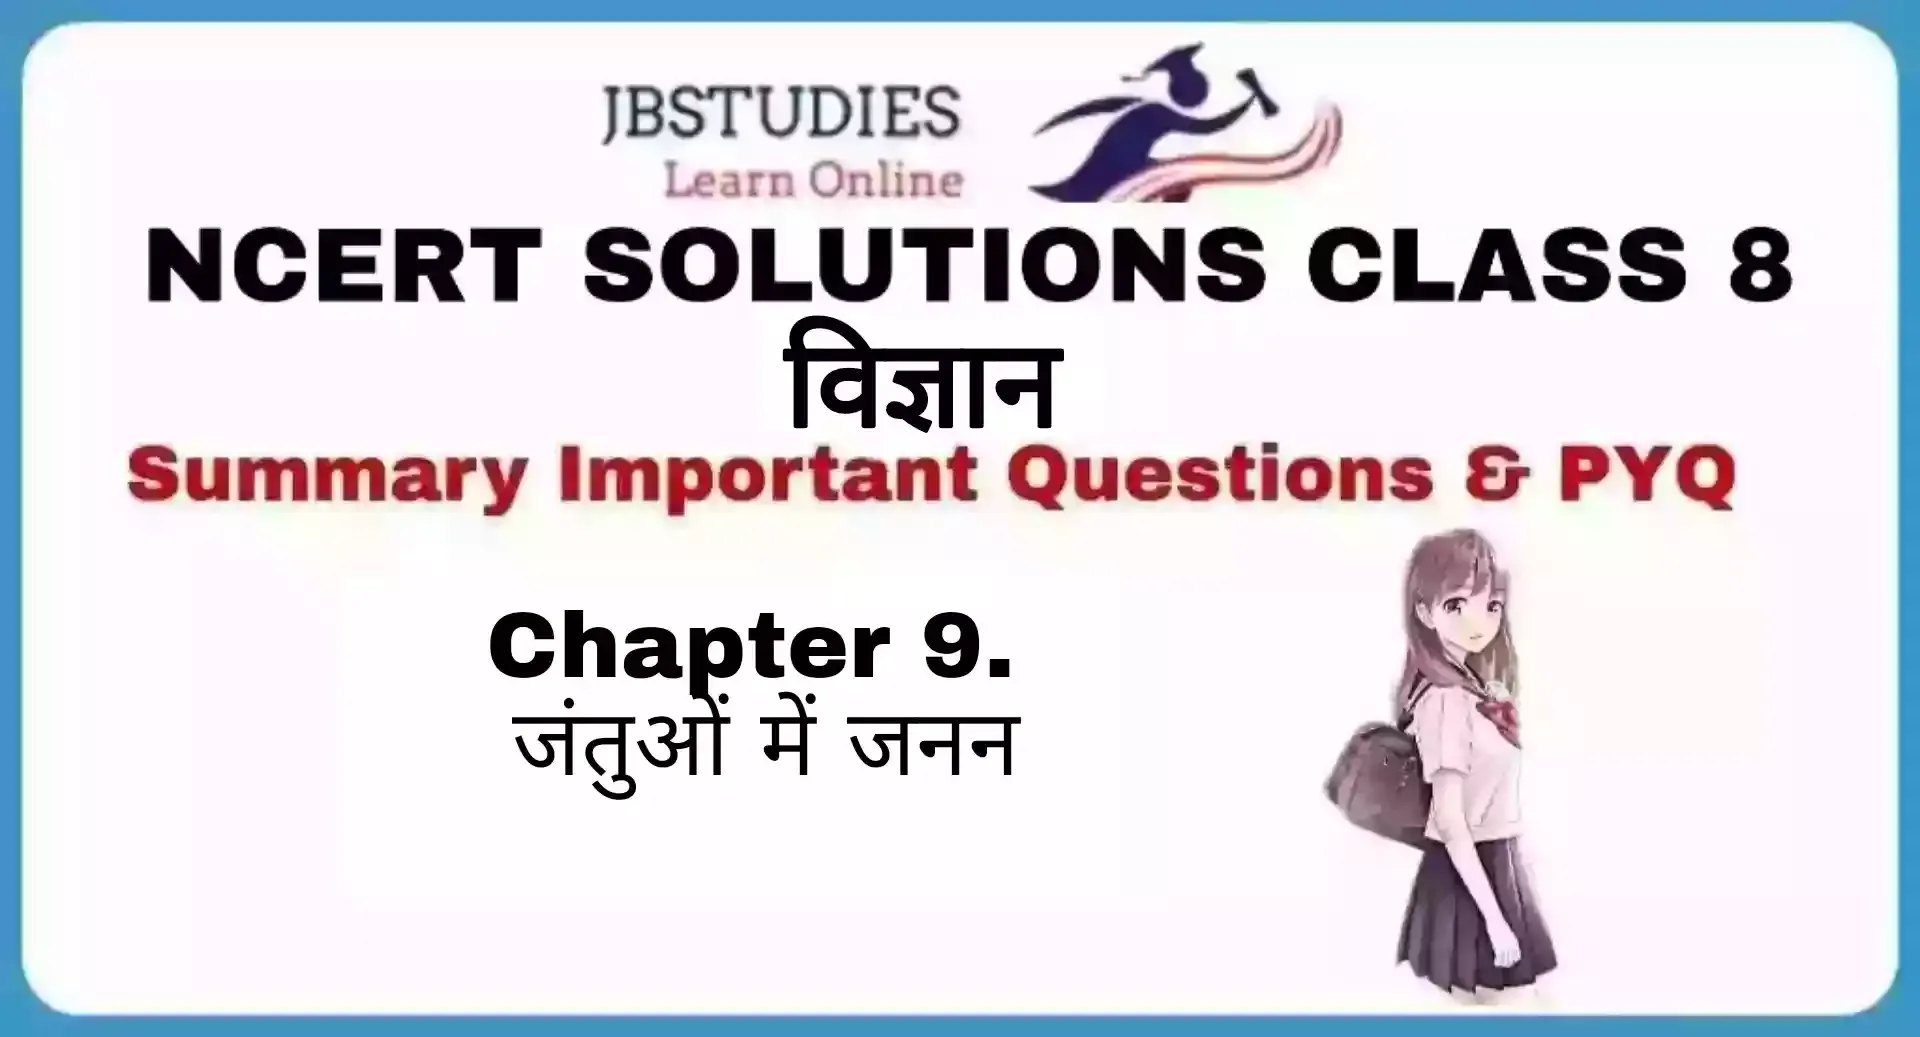 Solutions Class 8 विज्ञान Chapter- 9 (जंतुओं में जनन)